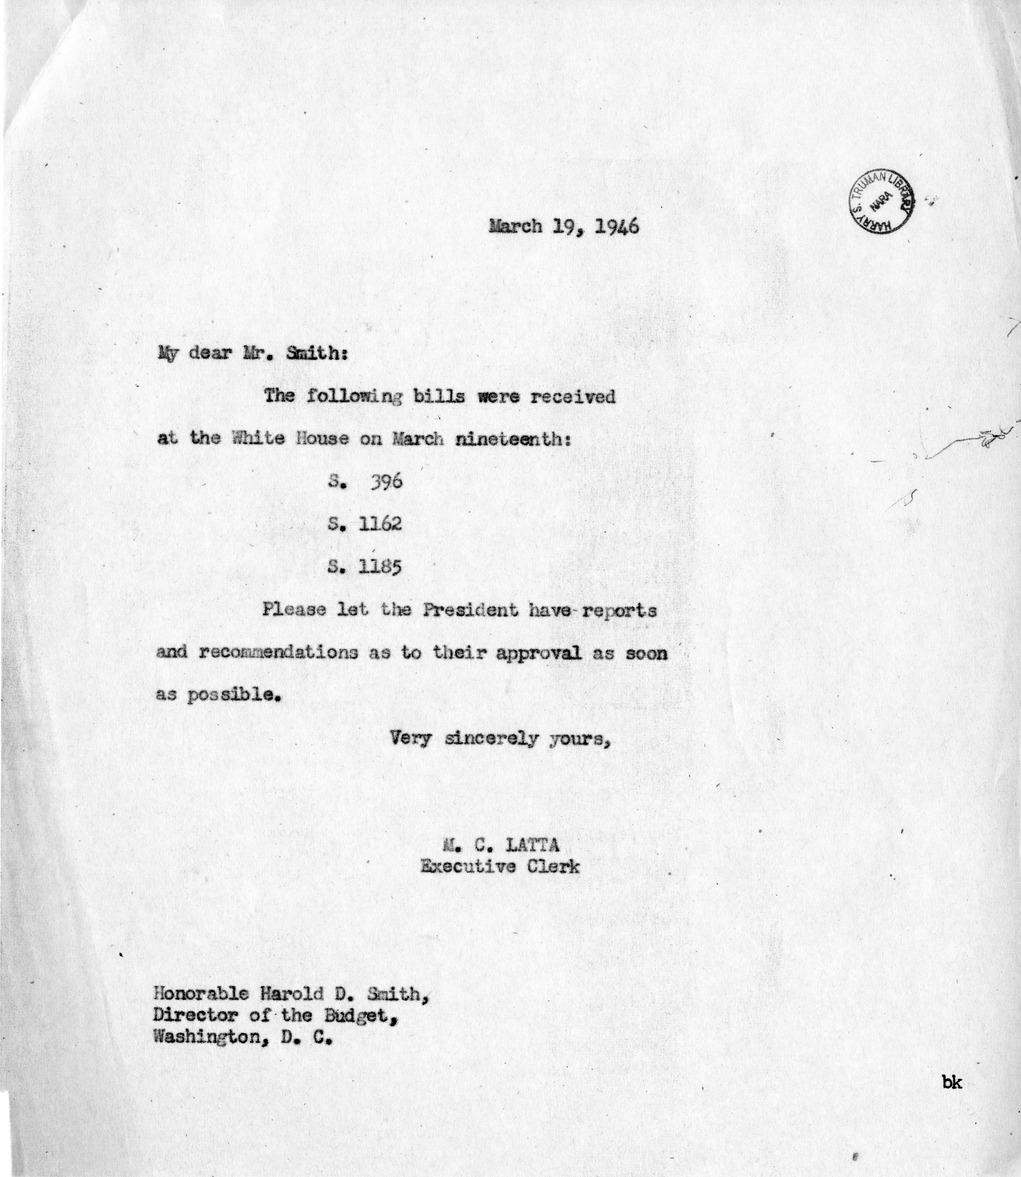 Memorandum from M.C. Latta to Harold D. Smith